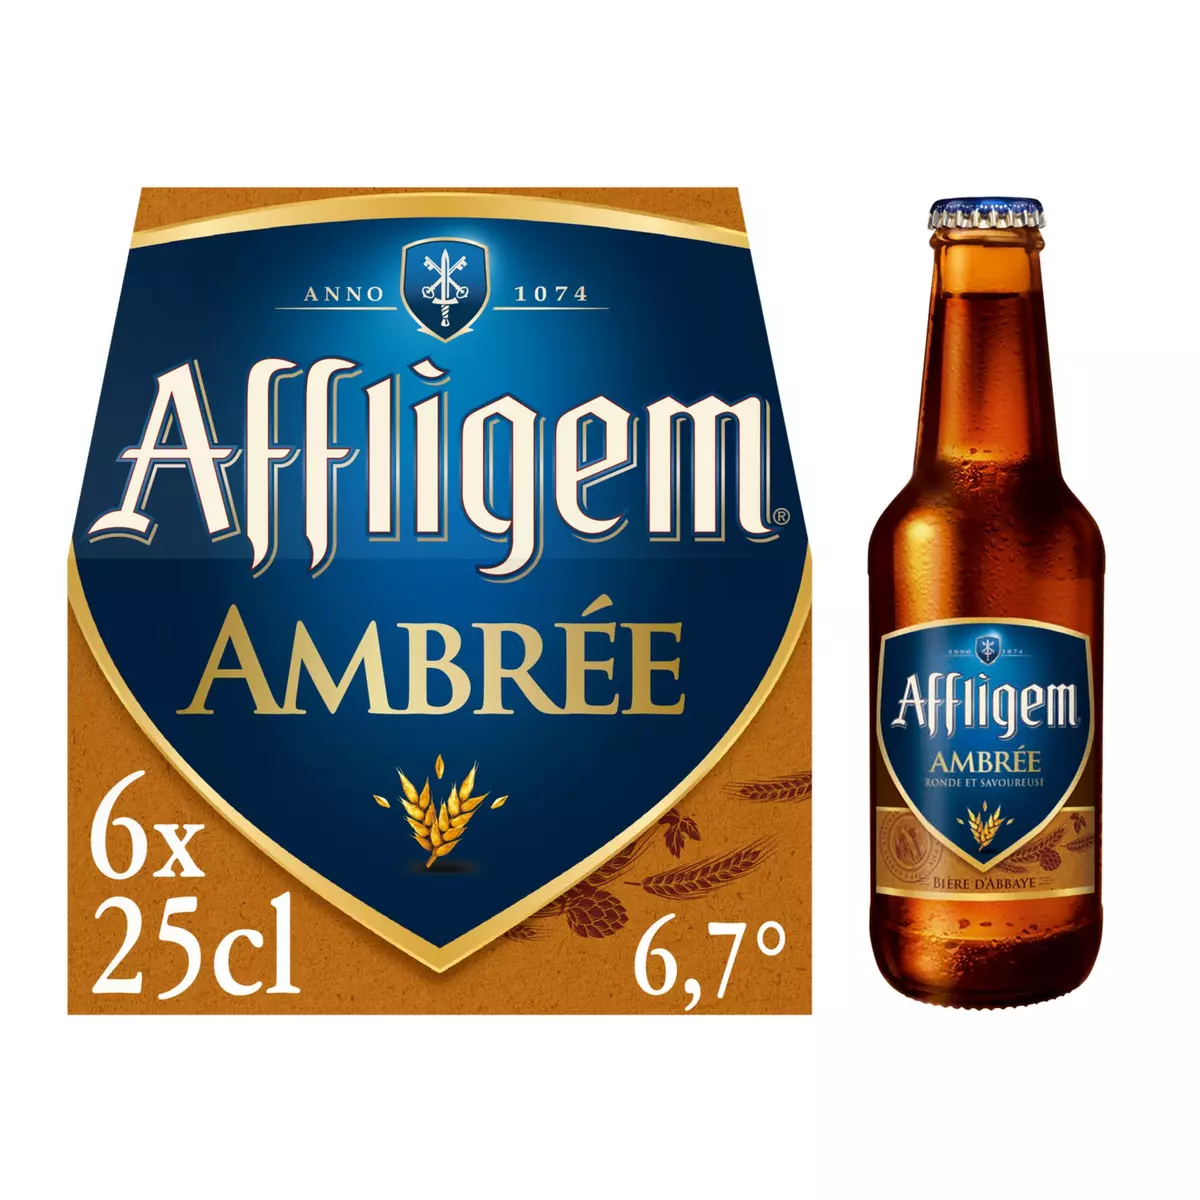 AFFLIGEM Bière double d'abbaye cuvée ambrée 6,7% bouteilles 6x25cl